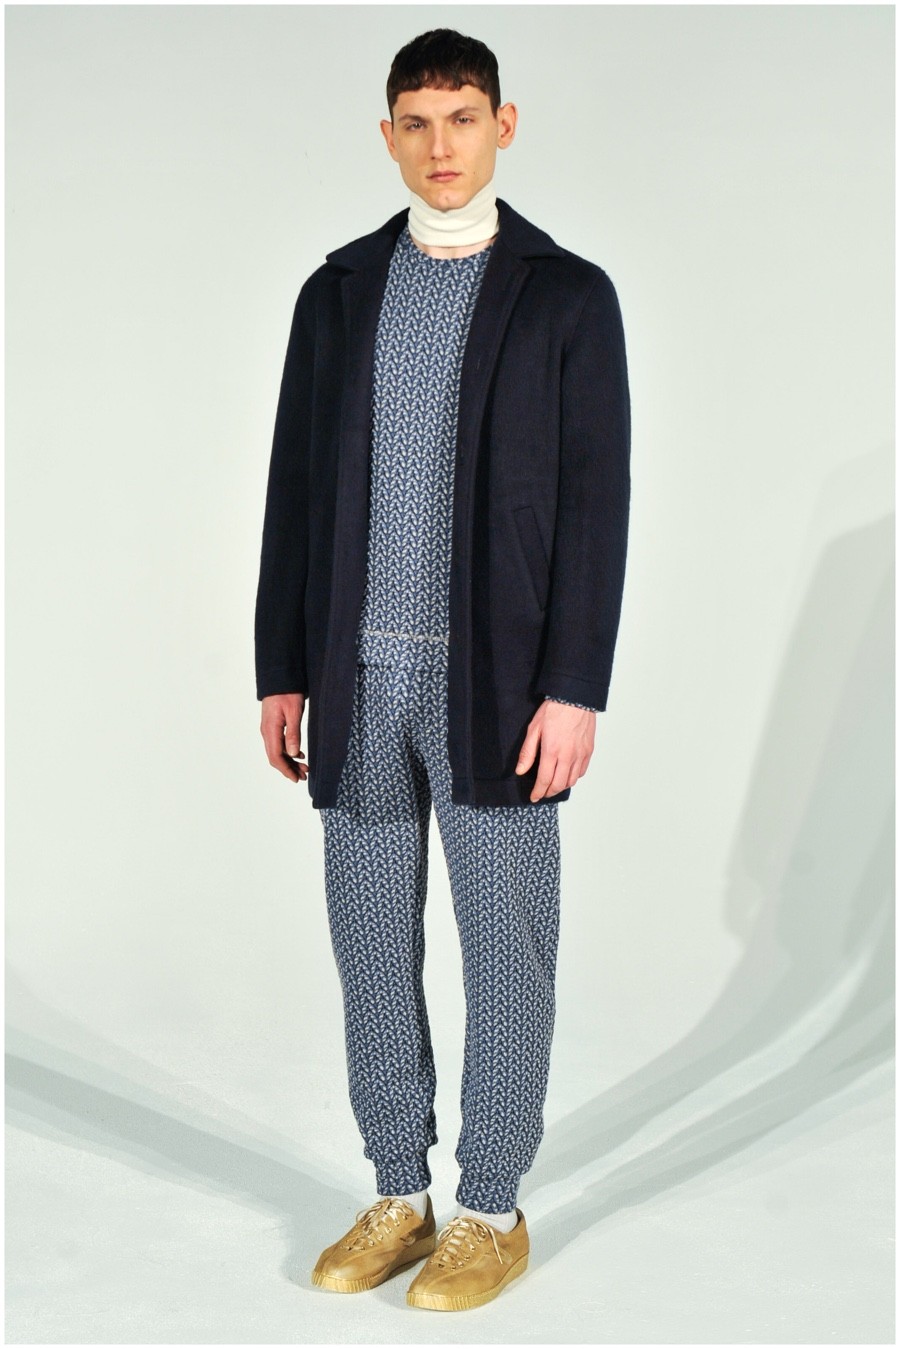 Lucio Castro Fall/Winter 2015 Menswear Collection | The Fashionisto